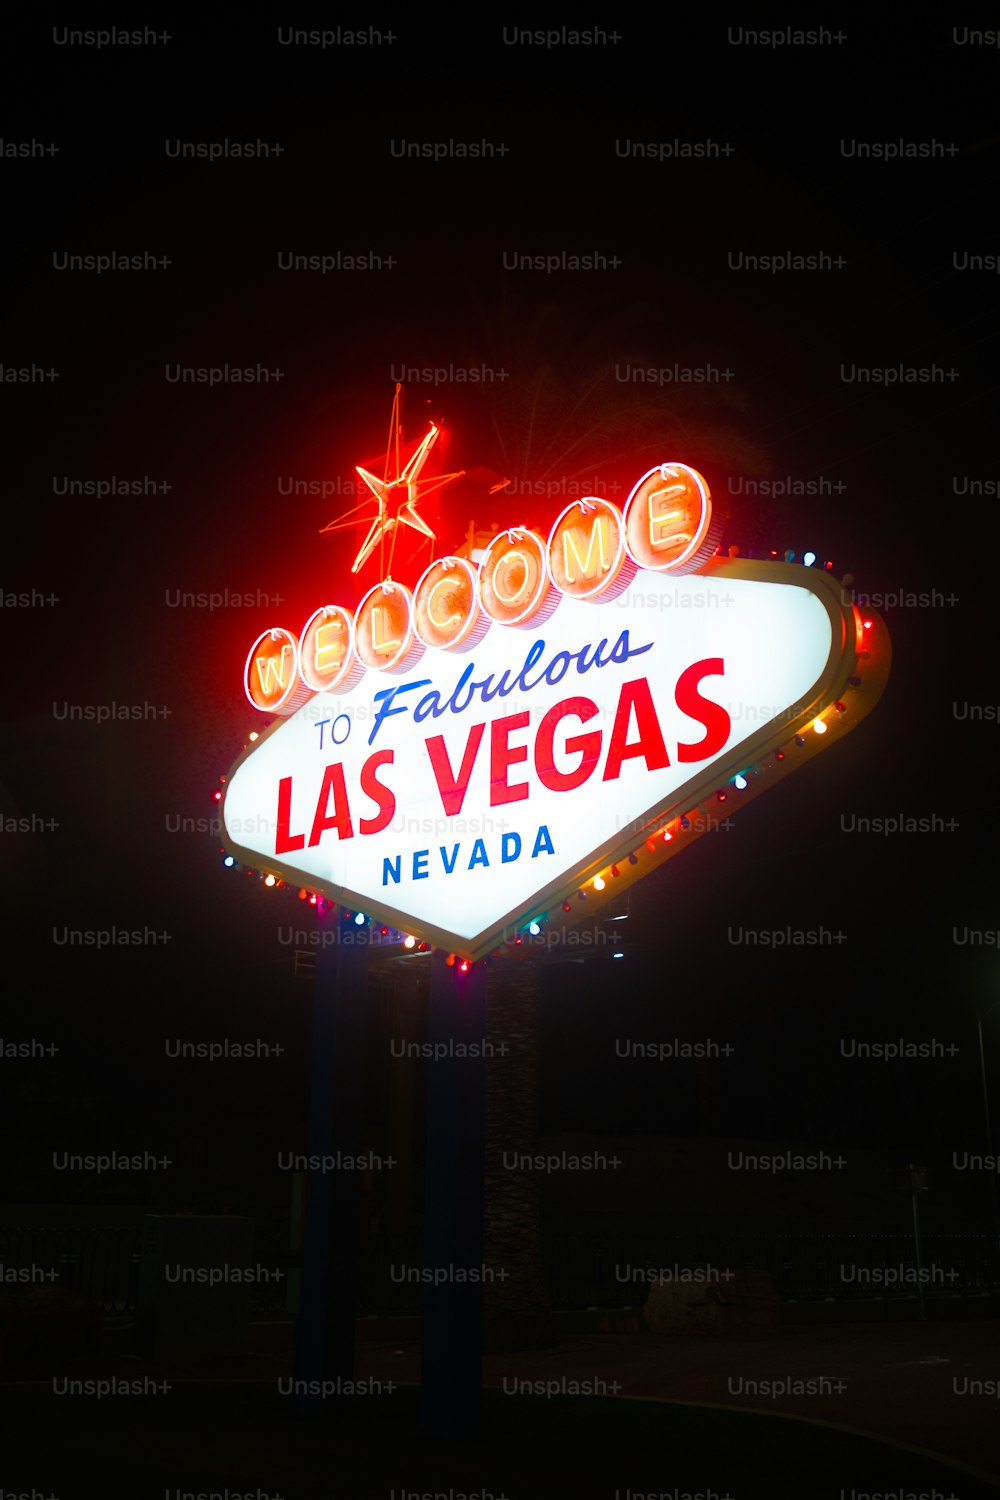 Eine Leuchtreklame, die Welcome to Fabulous Las Vegas sagt